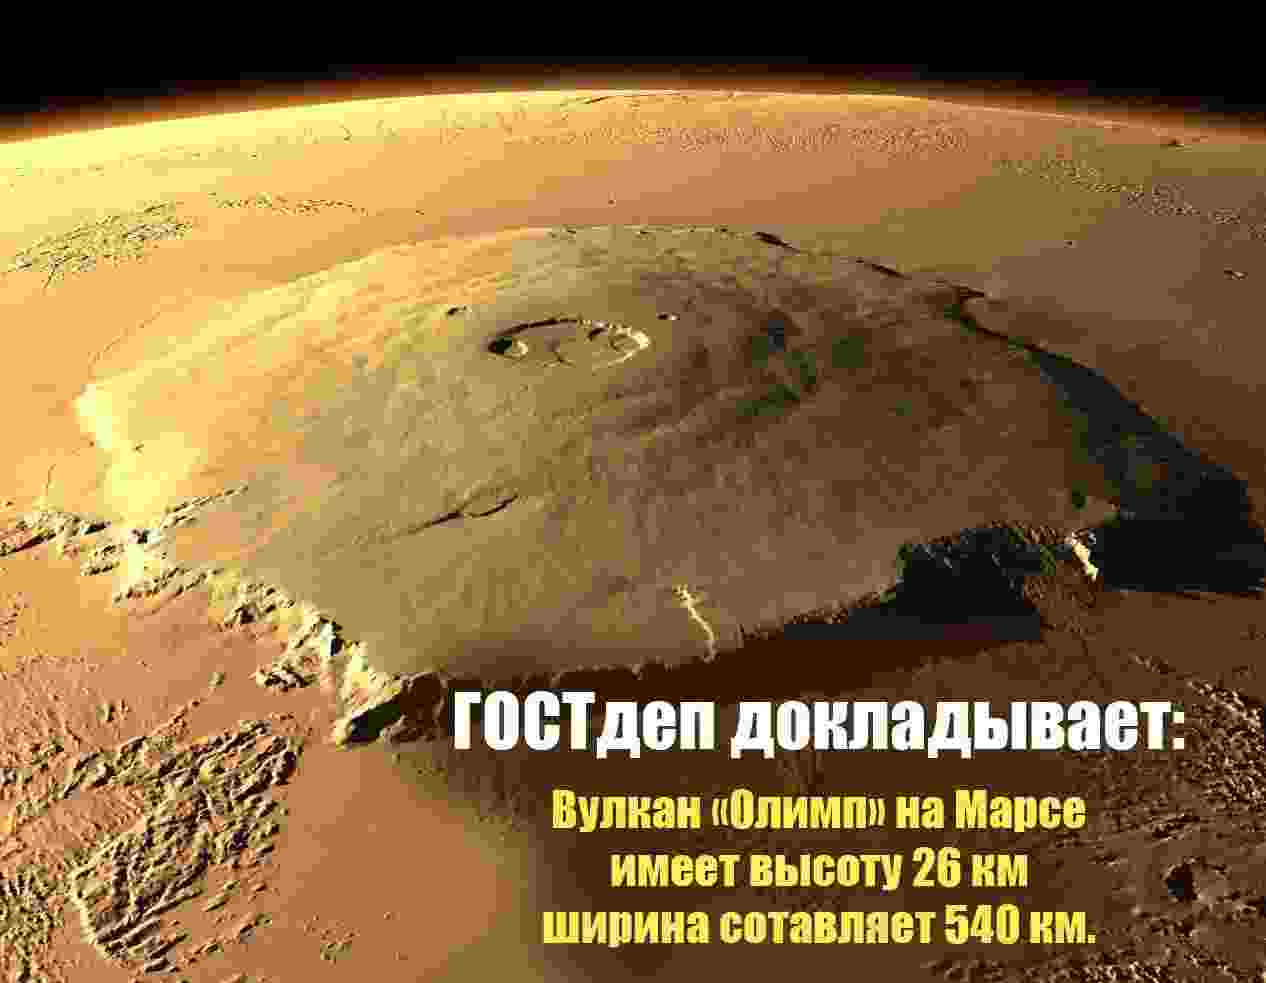 Олимп на марсе.jpg